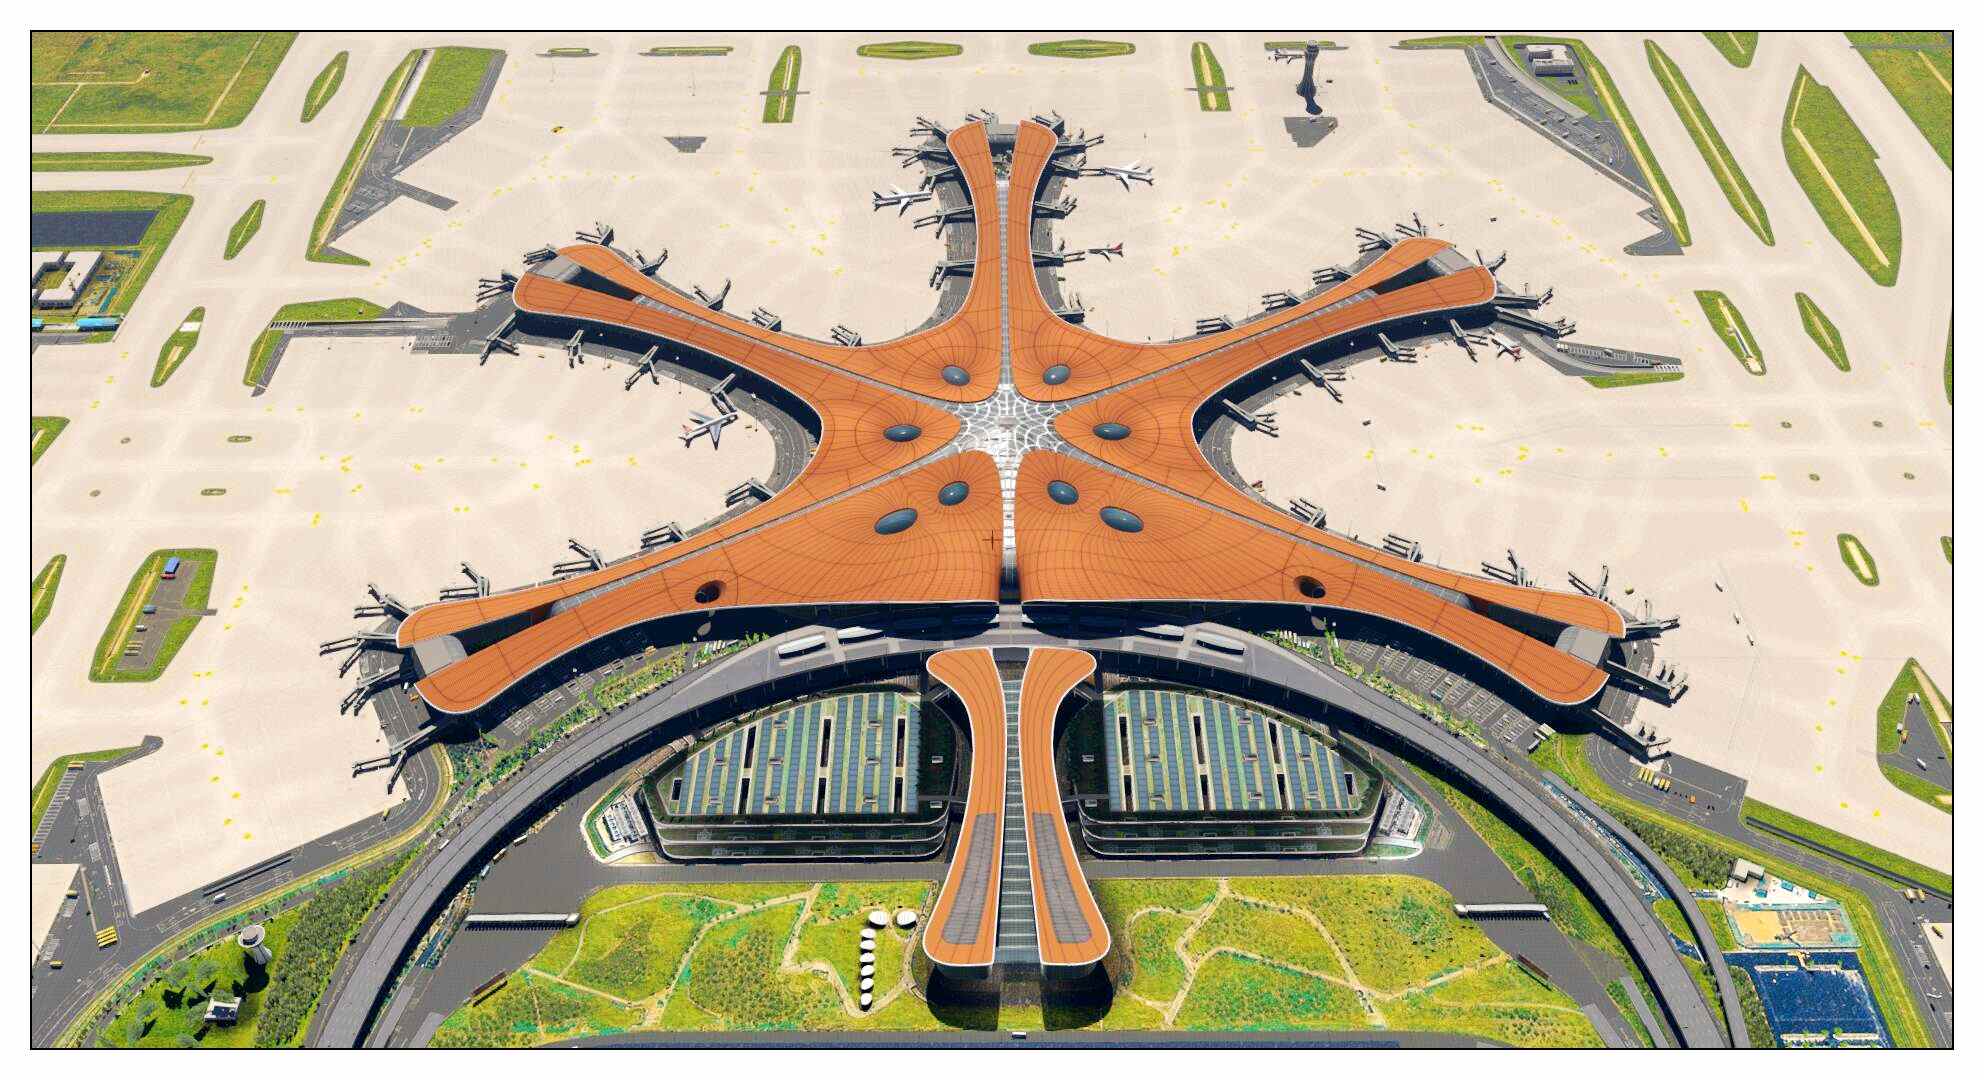 【X-Plane】ZBAD北京大兴国际机场-正式发布-3526 